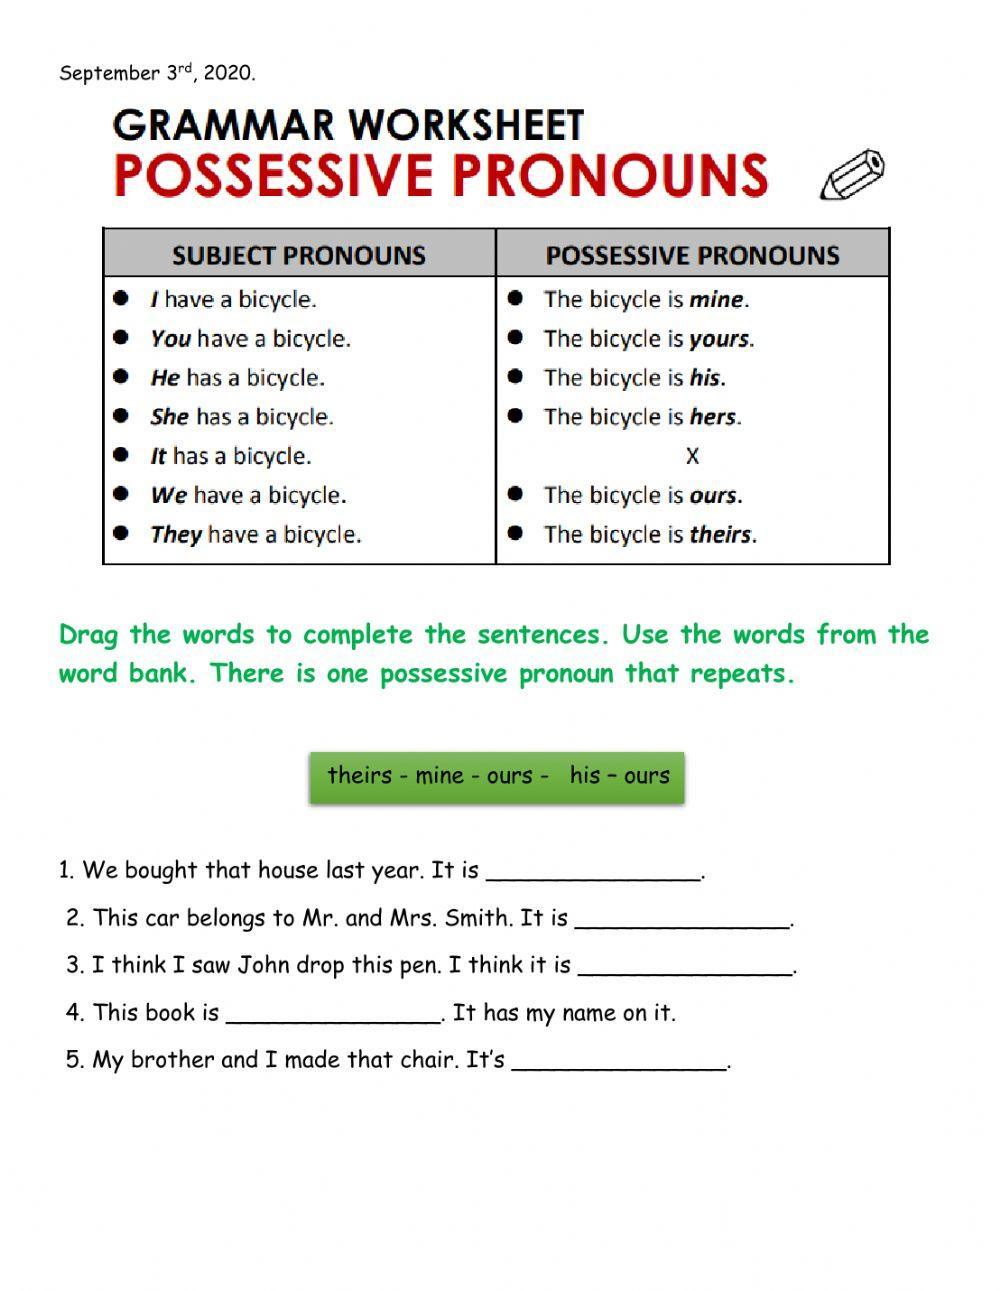 Possessive Pronouns Review